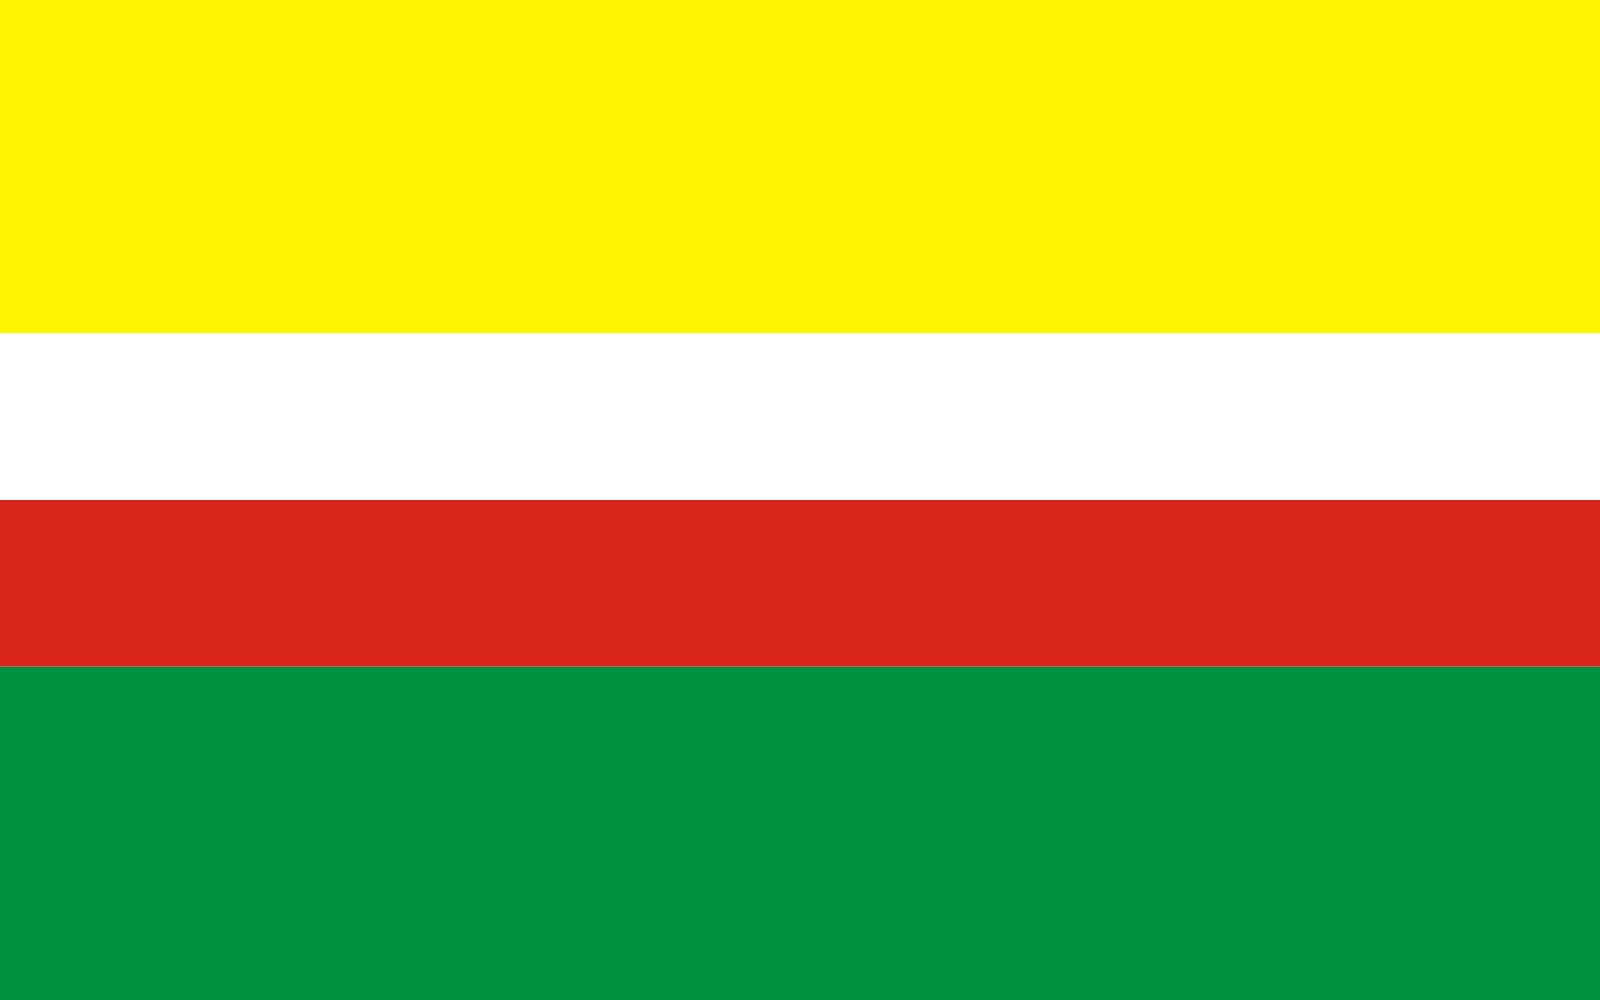 Vlajka lubušského vojvodství | vlajka, prapor, symbol, vlaječka, obrázek | Polská vojvodství |  1600x1000 px